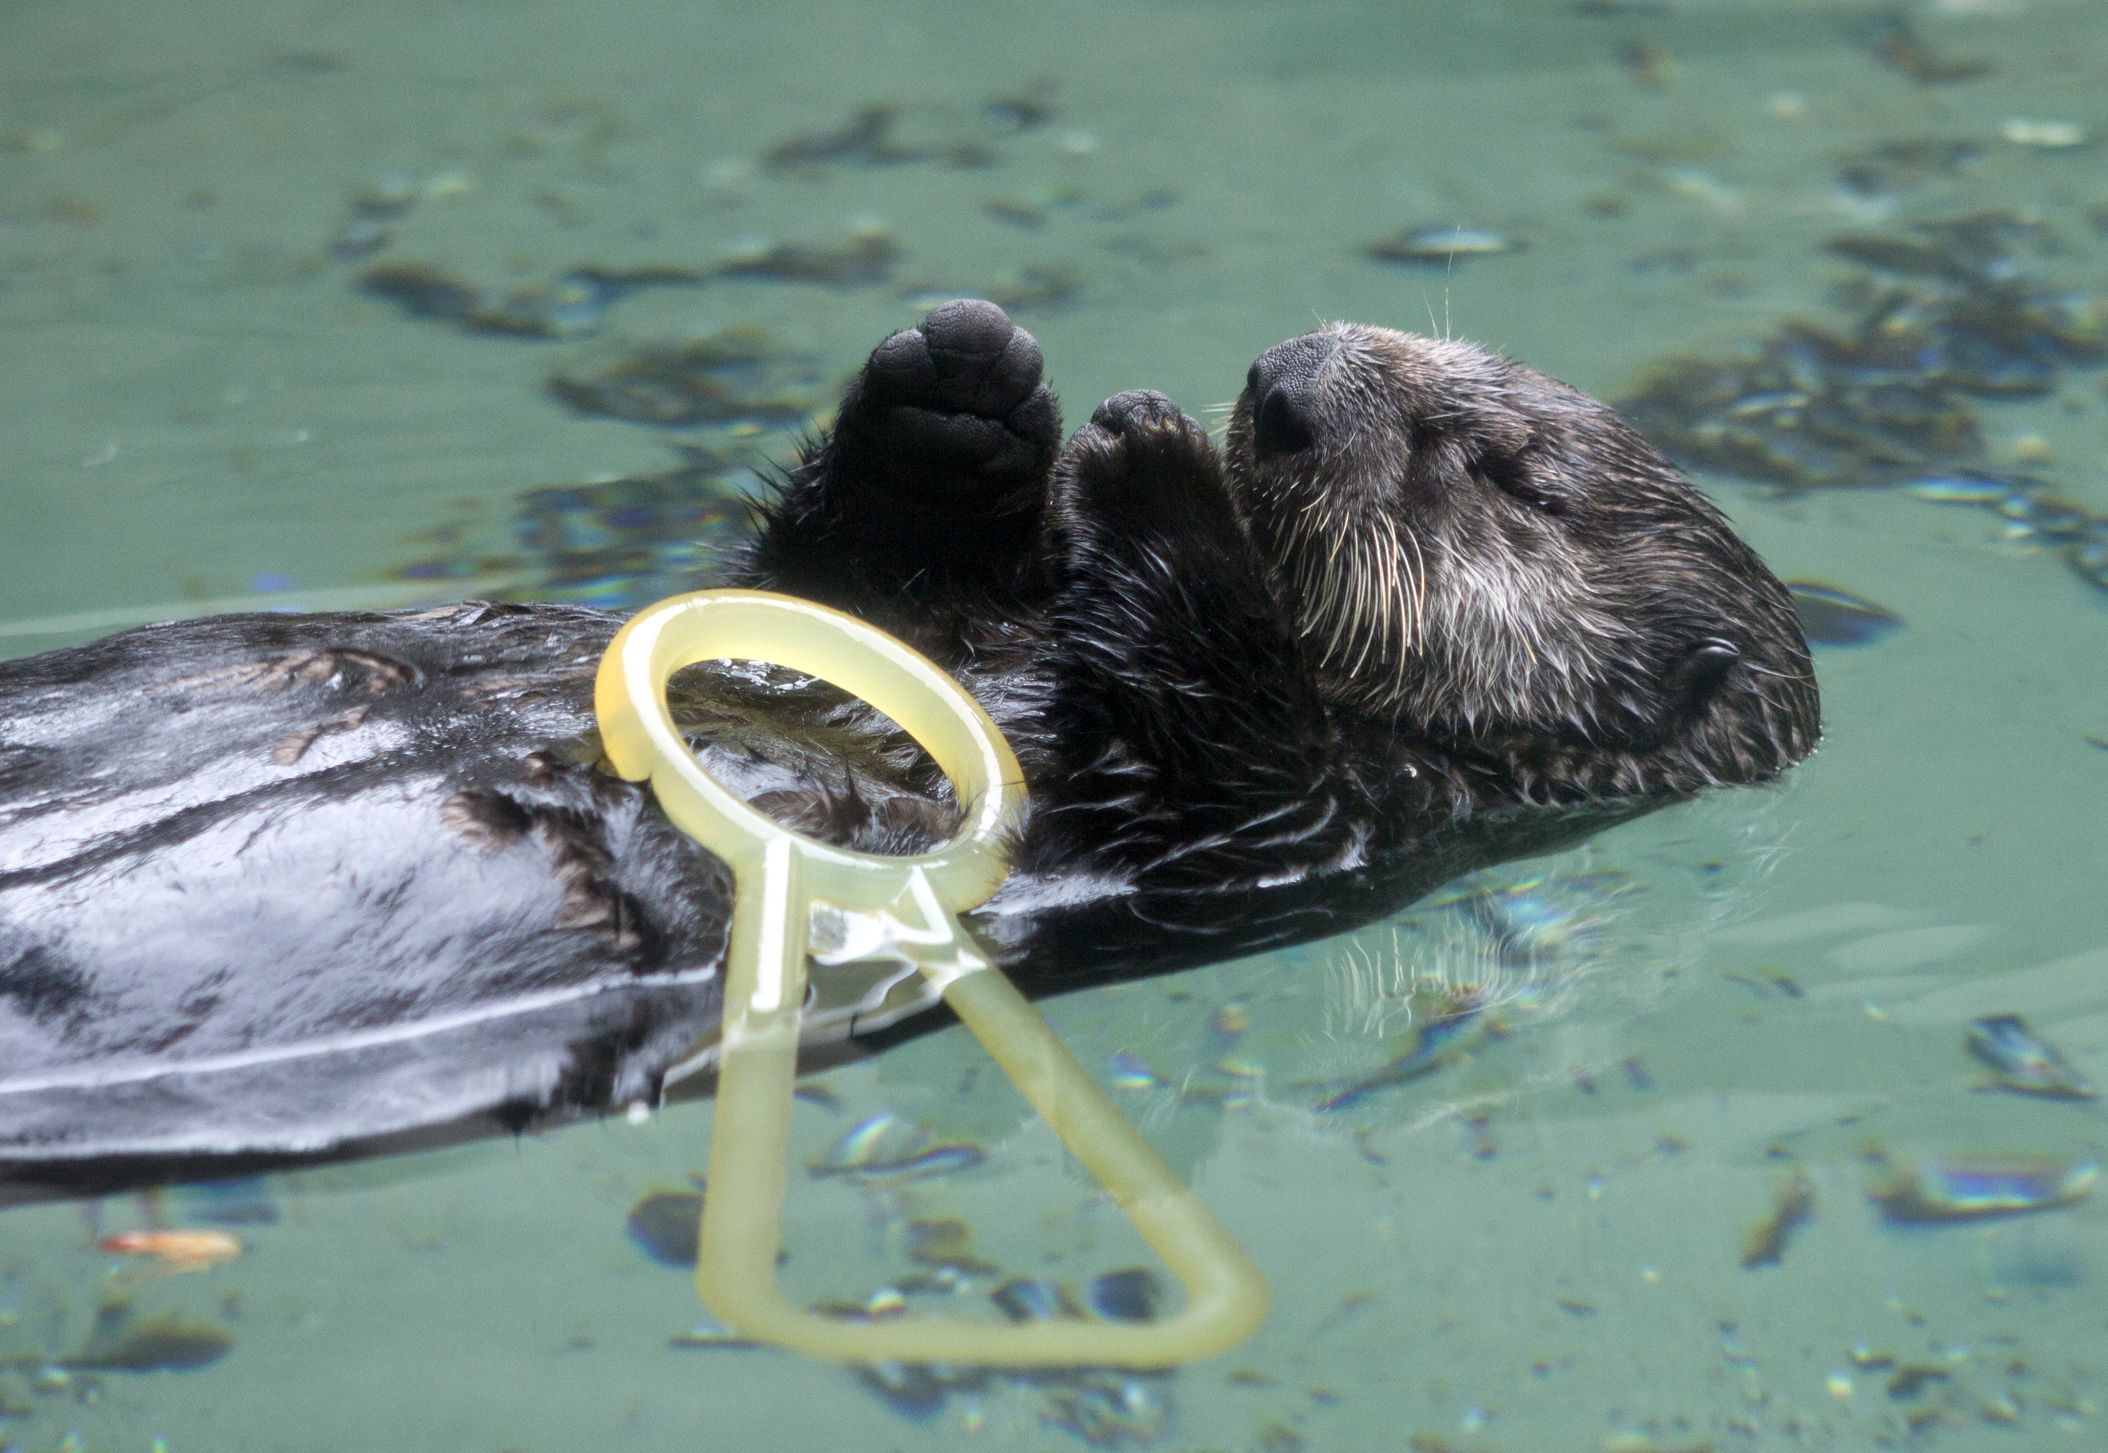 Little Sea Otter Sekiu Falls Asleep and Drops Her Toy